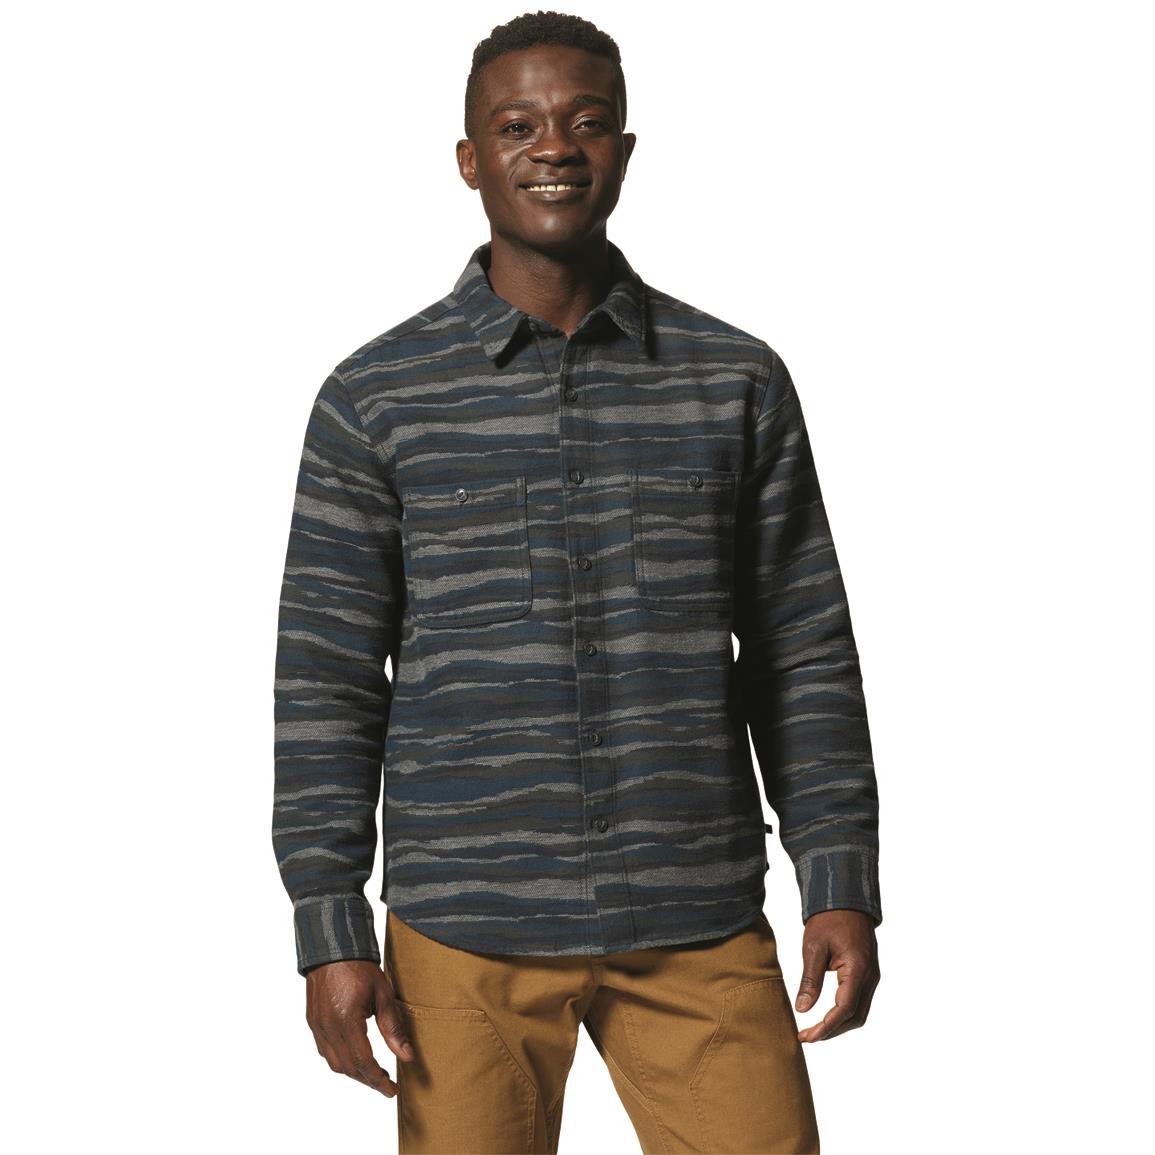 Mountain Hardwear Men's Granite Peak Jacquard Flannel Shirt, Hardwear Navy